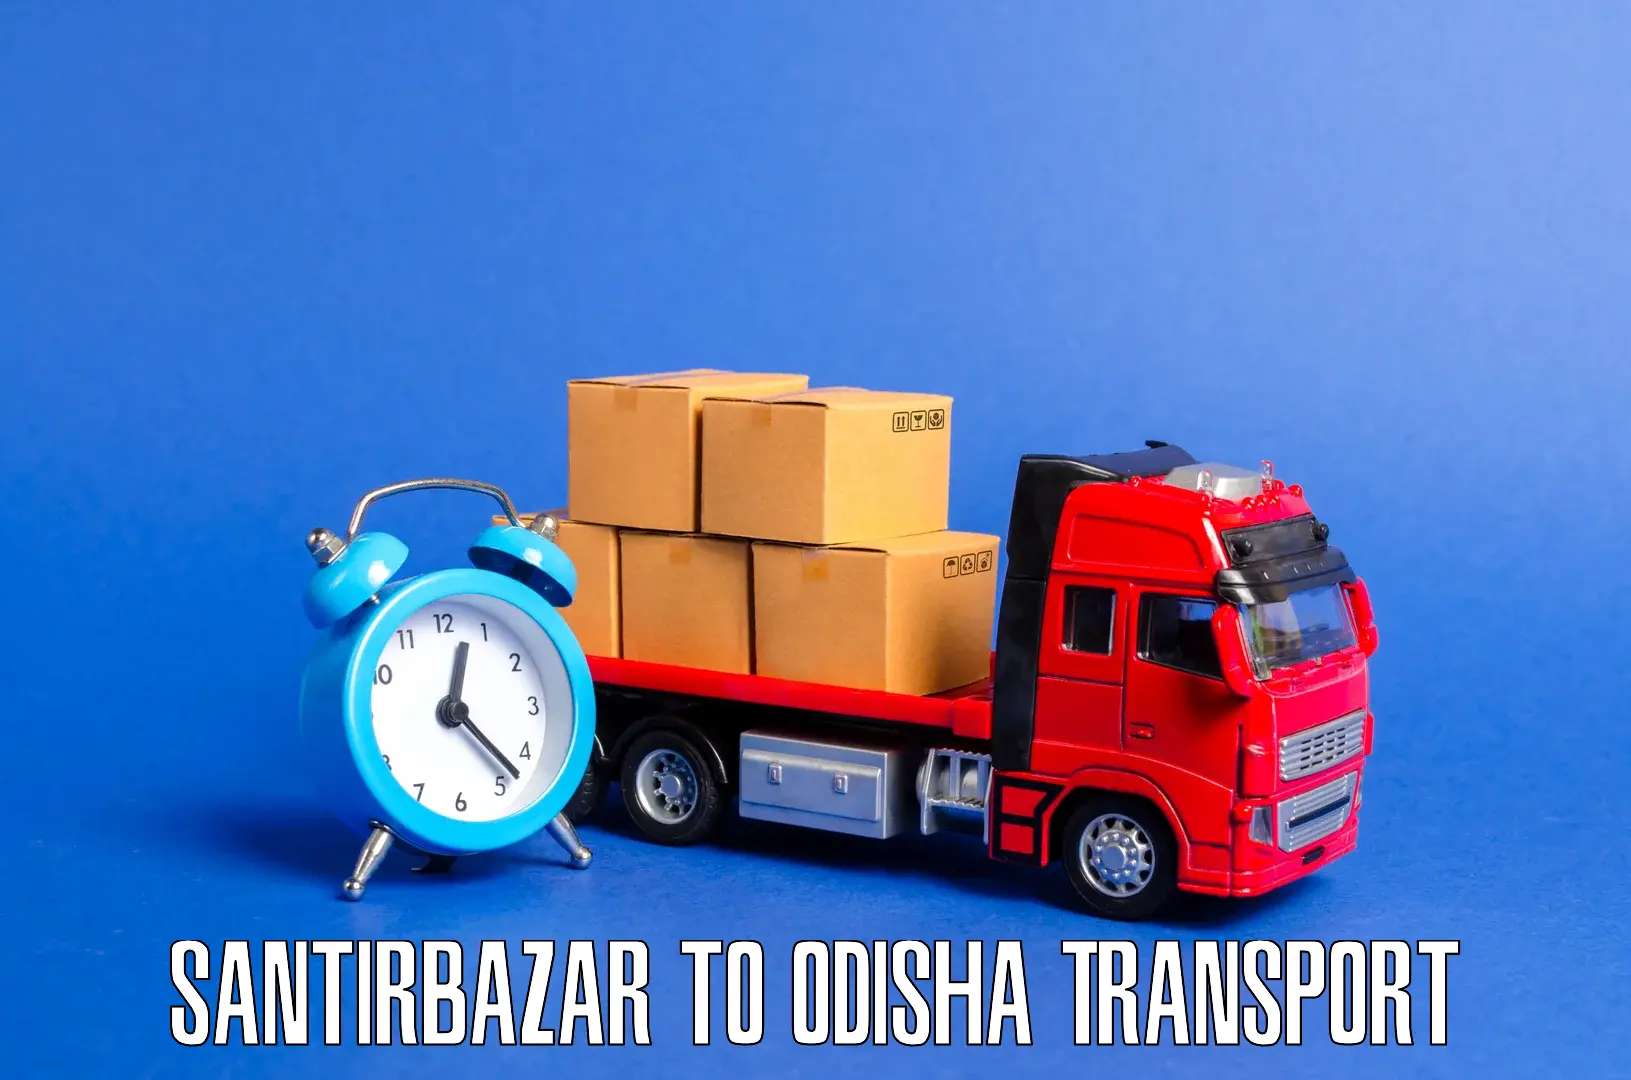 Interstate transport services Santirbazar to Bhuban